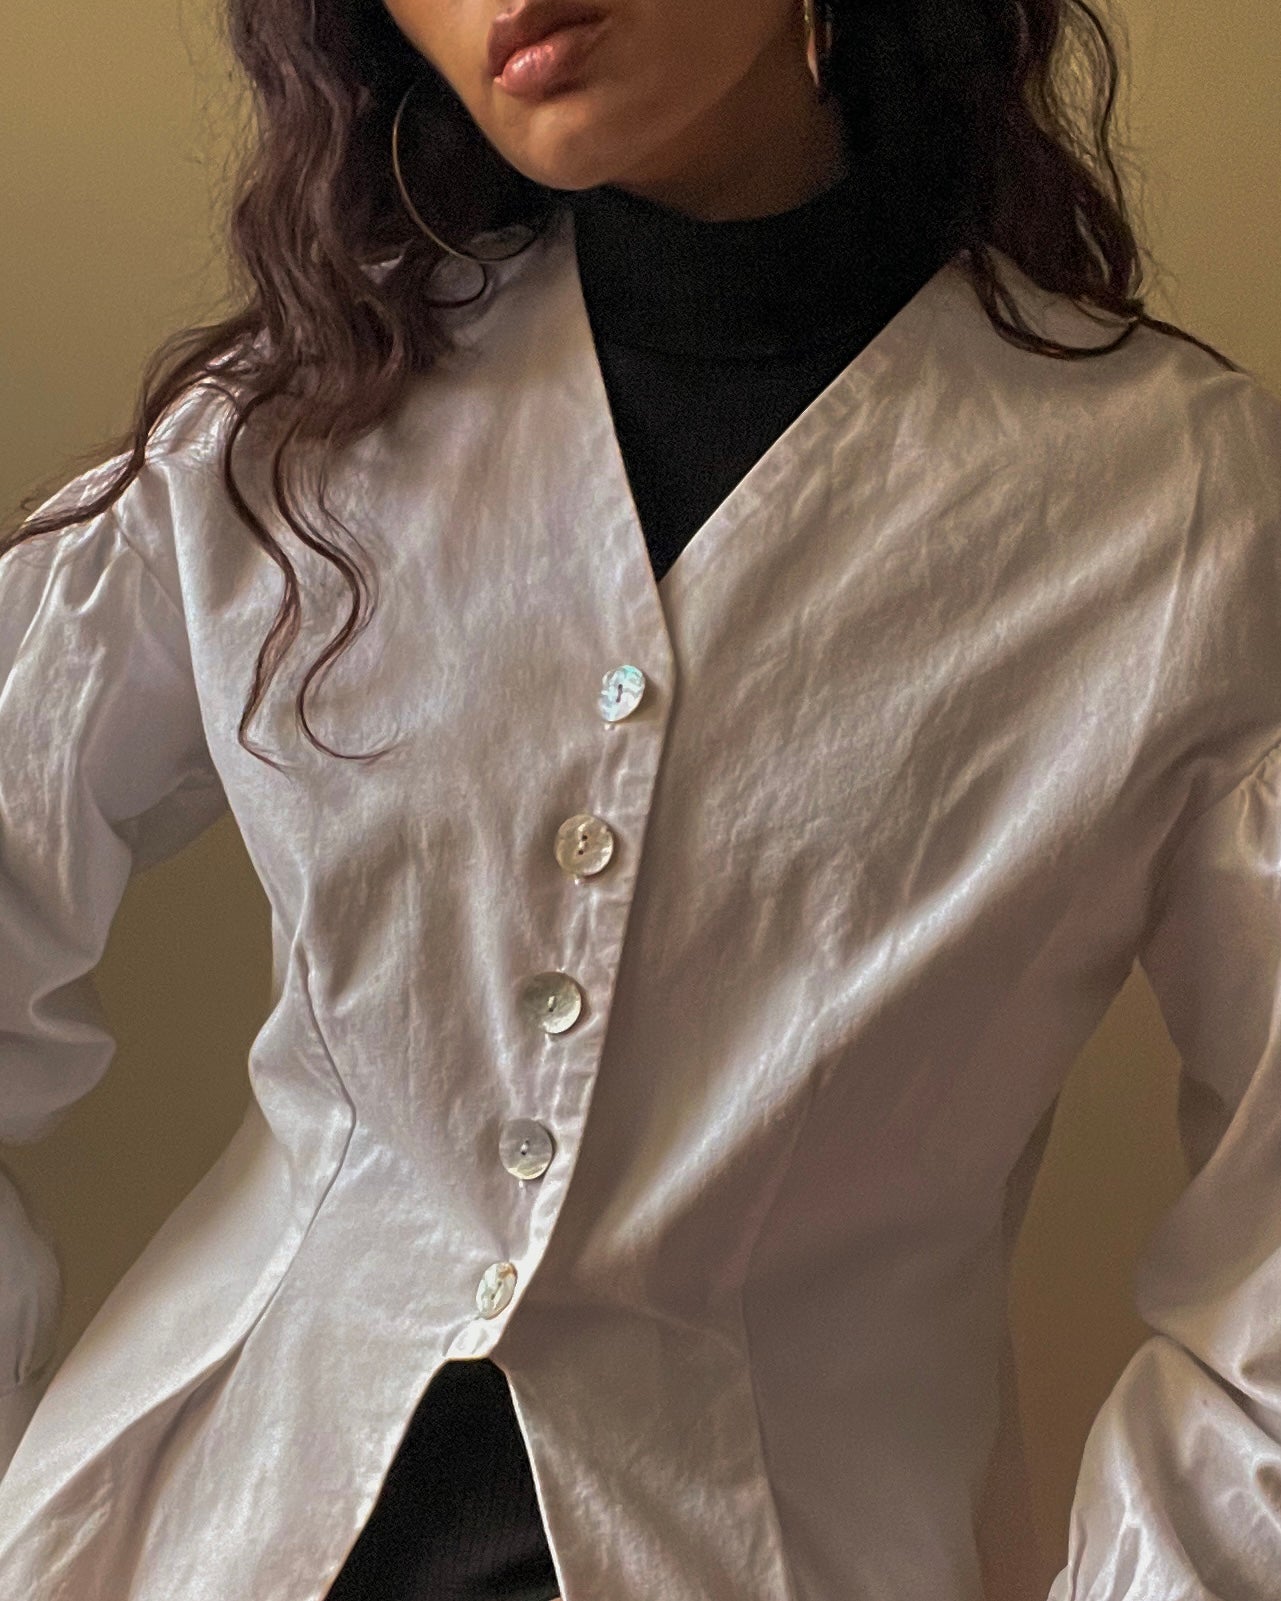 Vintage White Cotton Feminine Top